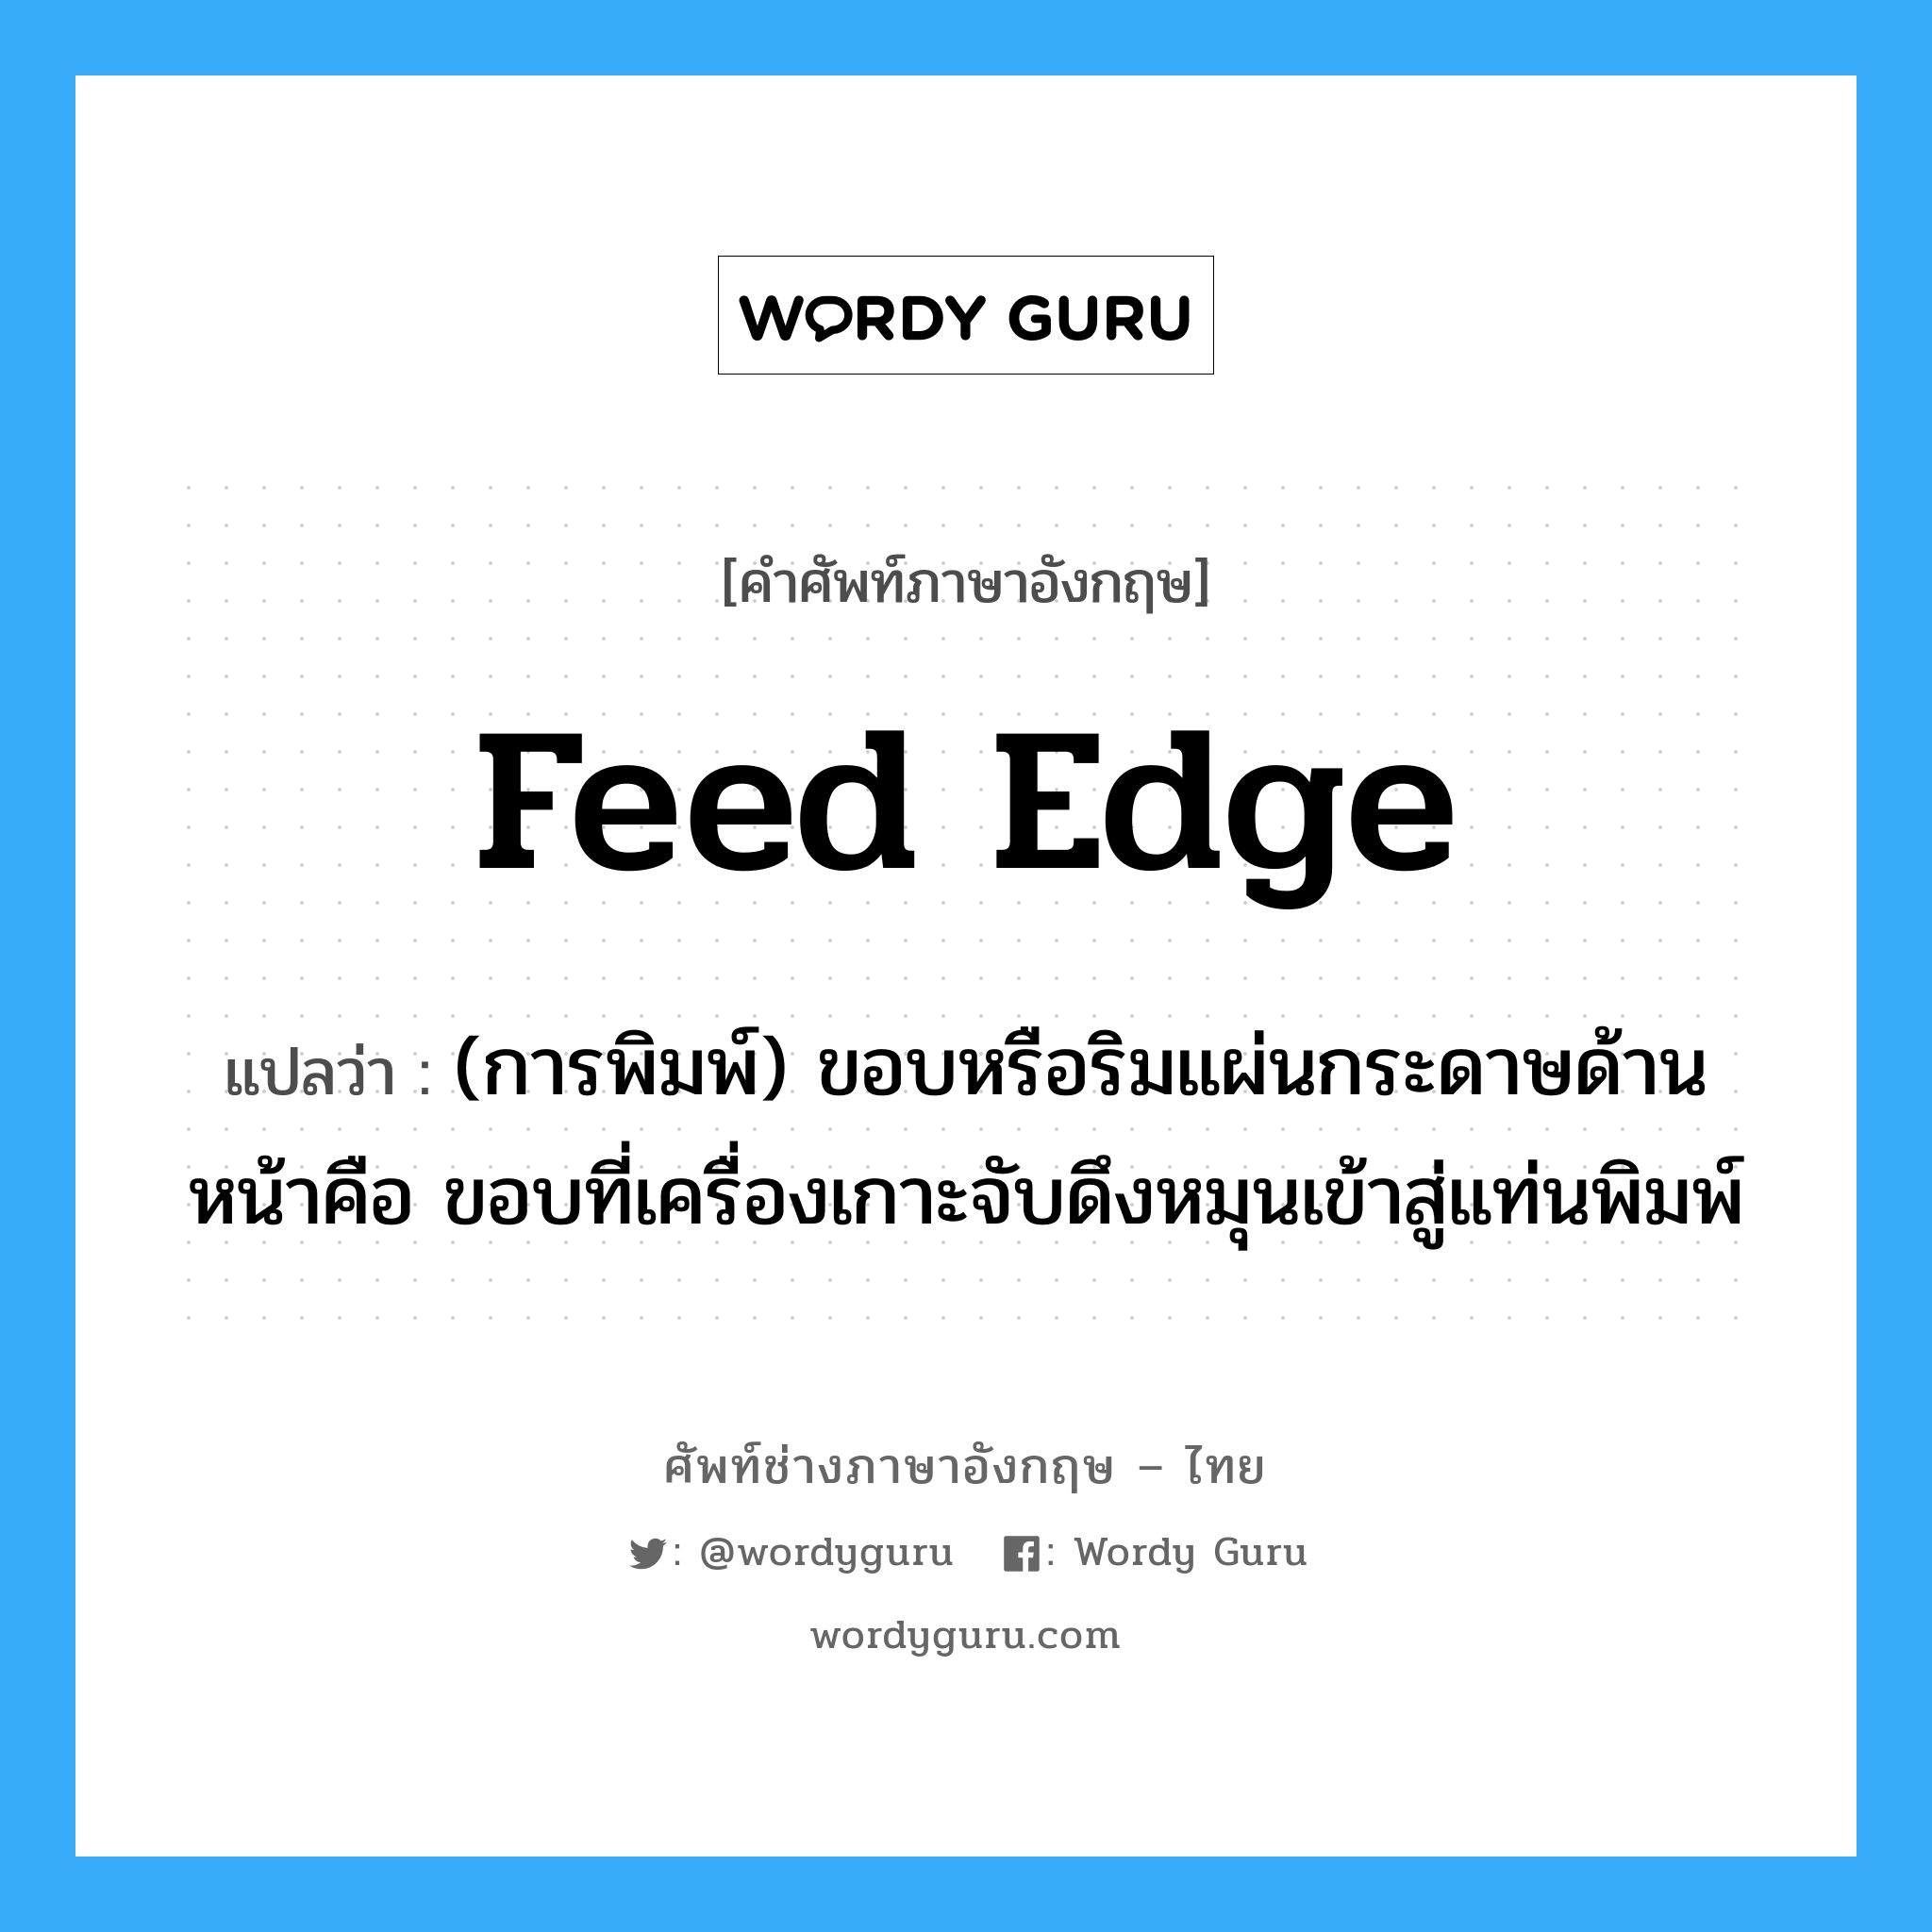 feed edge แปลว่า?, คำศัพท์ช่างภาษาอังกฤษ - ไทย feed edge คำศัพท์ภาษาอังกฤษ feed edge แปลว่า (การพิมพ์) ขอบหรือริมแผ่นกระดาษด้านหน้าคือ ขอบที่เครื่องเกาะจับดึงหมุนเข้าสู่แท่นพิมพ์